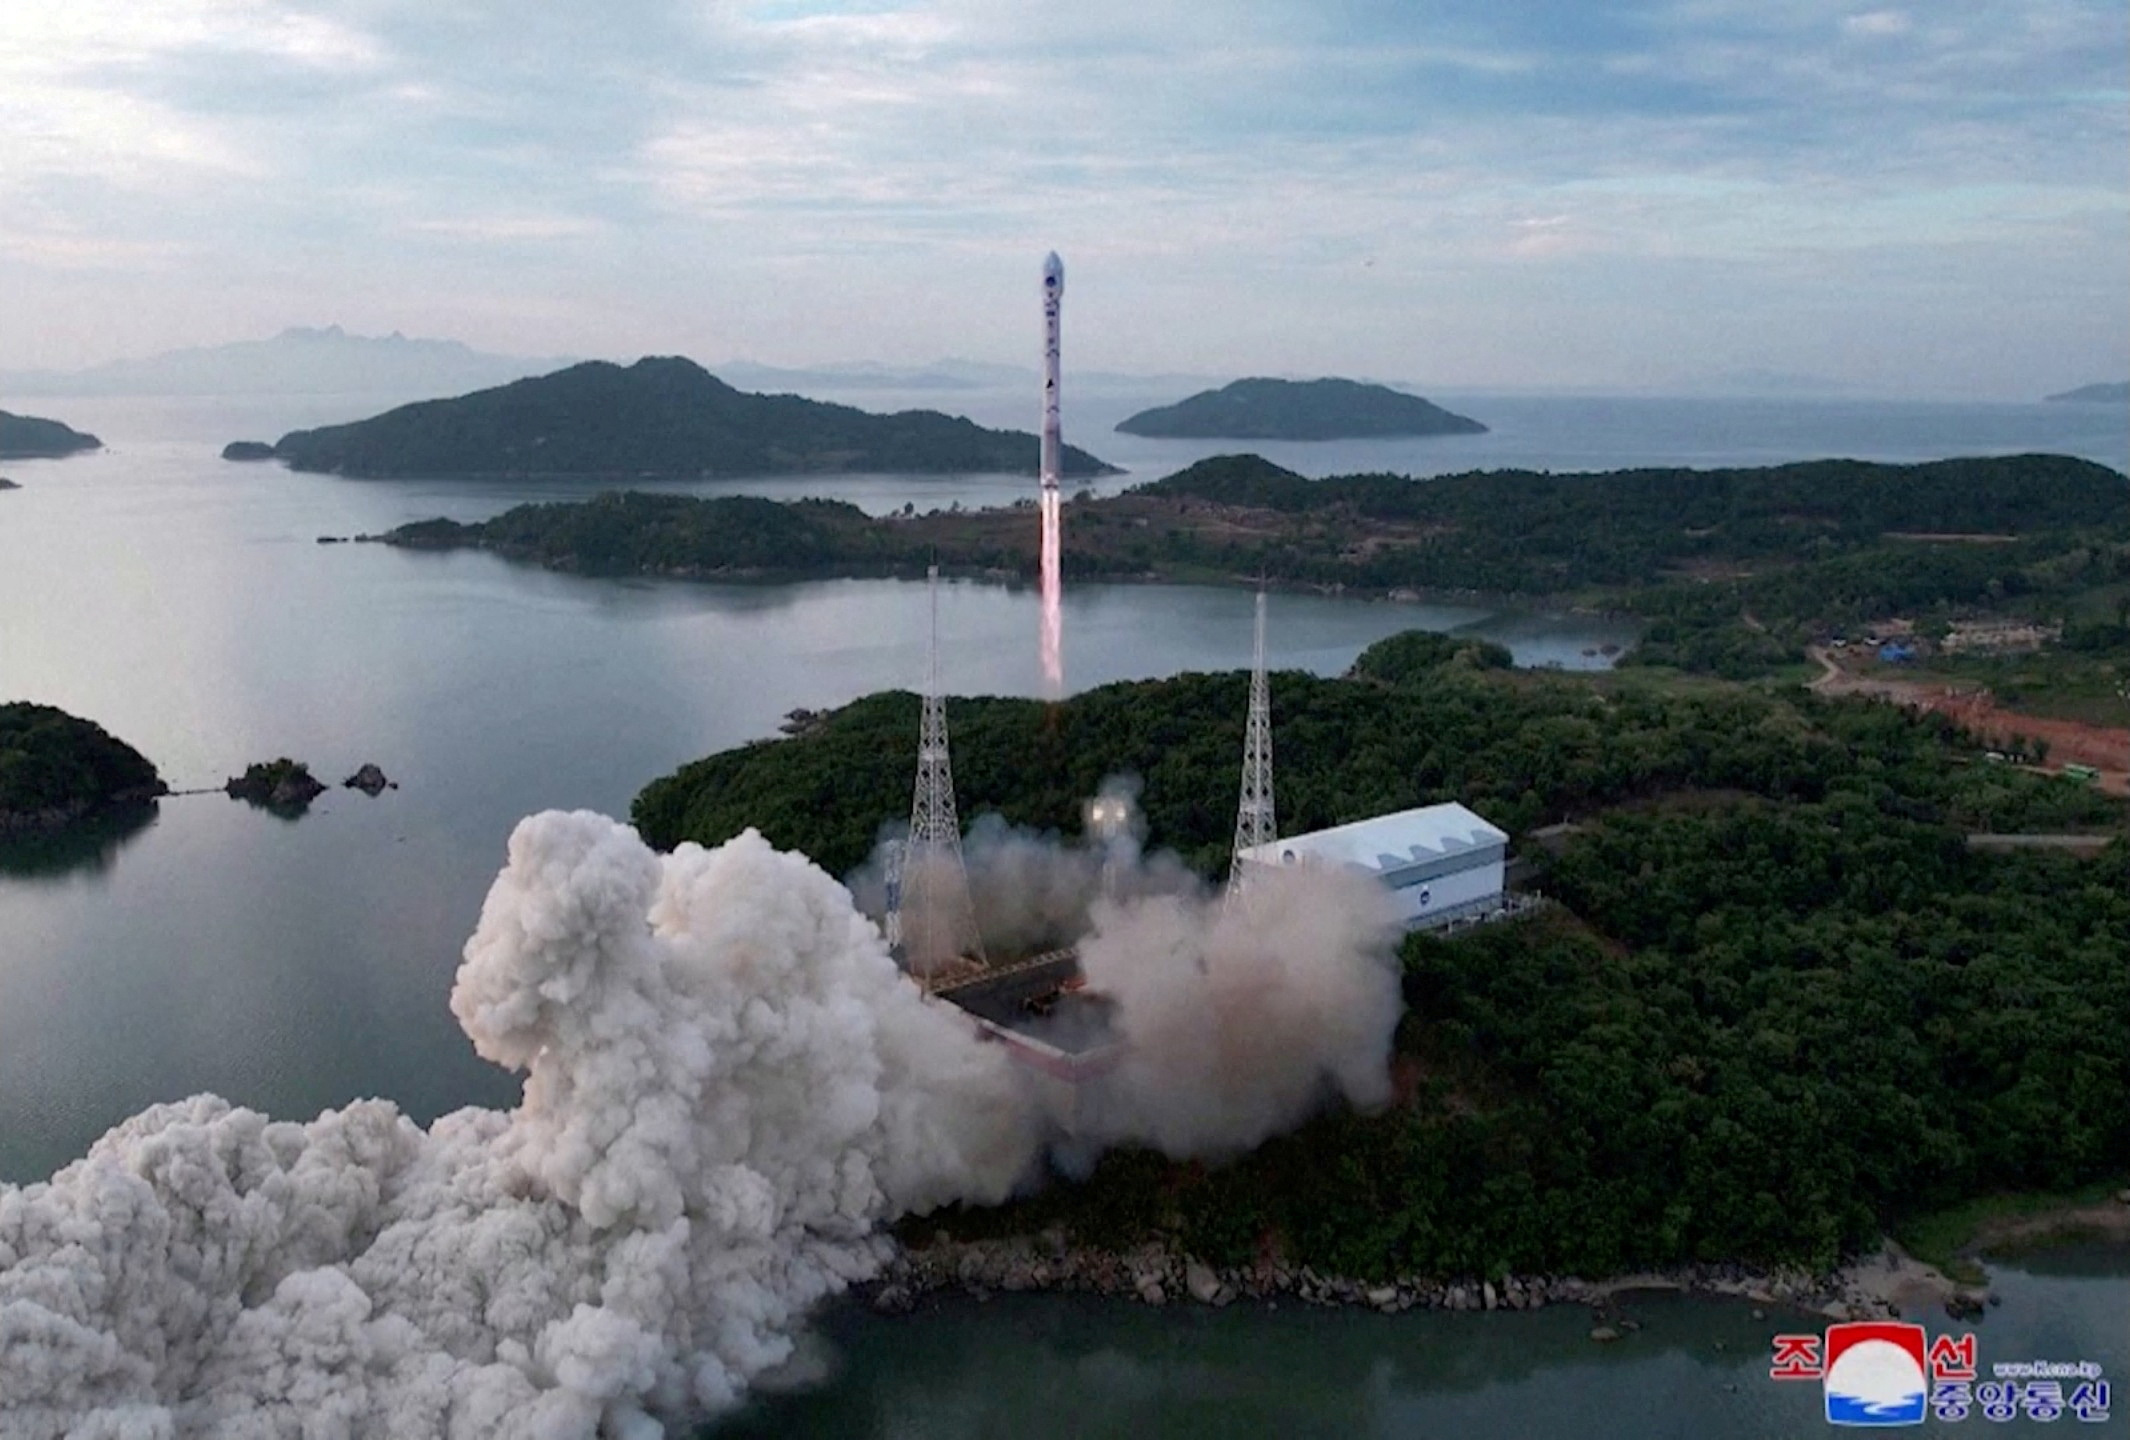 Η Βόρεια Κορέα προειδοποίησε την Ιαπωνία πως θα εκτοξεύσει δορυφόρο